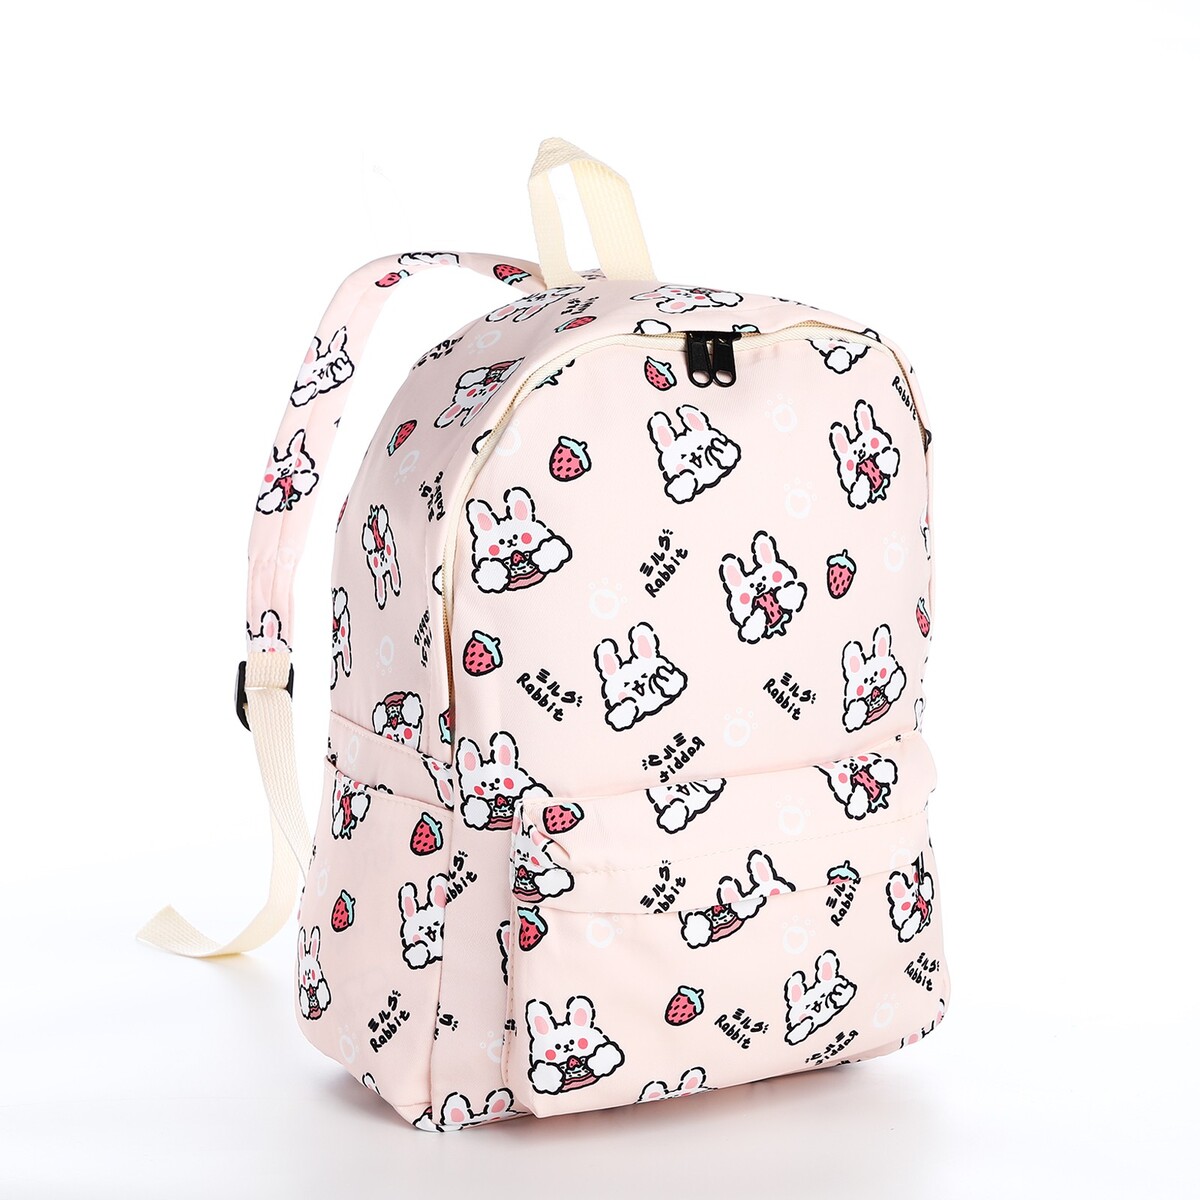 Рюкзак школьный из текстиля на молнии, 3 кармана, цвет бежевый/розовый рюкзак молодежный из текстиля на молнии 3 кармана серо бежевый